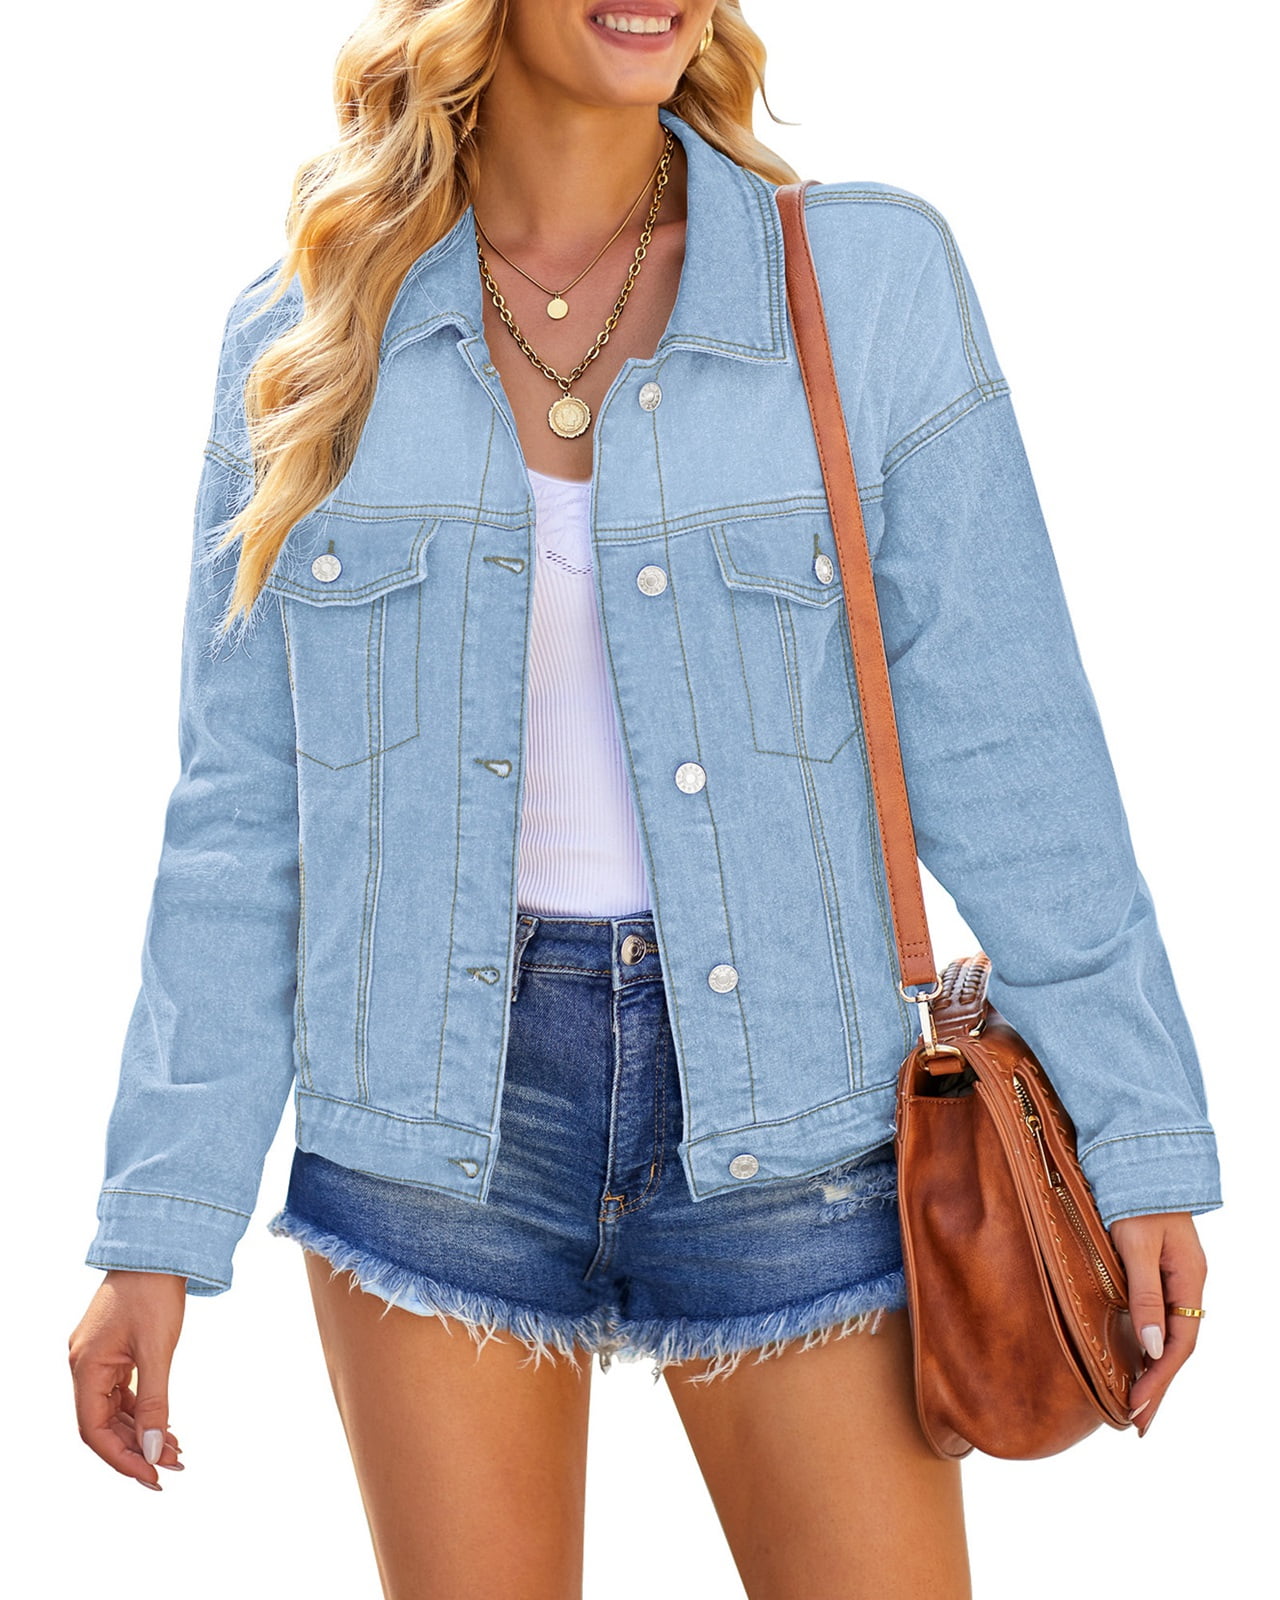 NW JouJou Girls “Summer” Premium Light Denim Jacket Hood Full Zip LG Orig  $77 | eBay